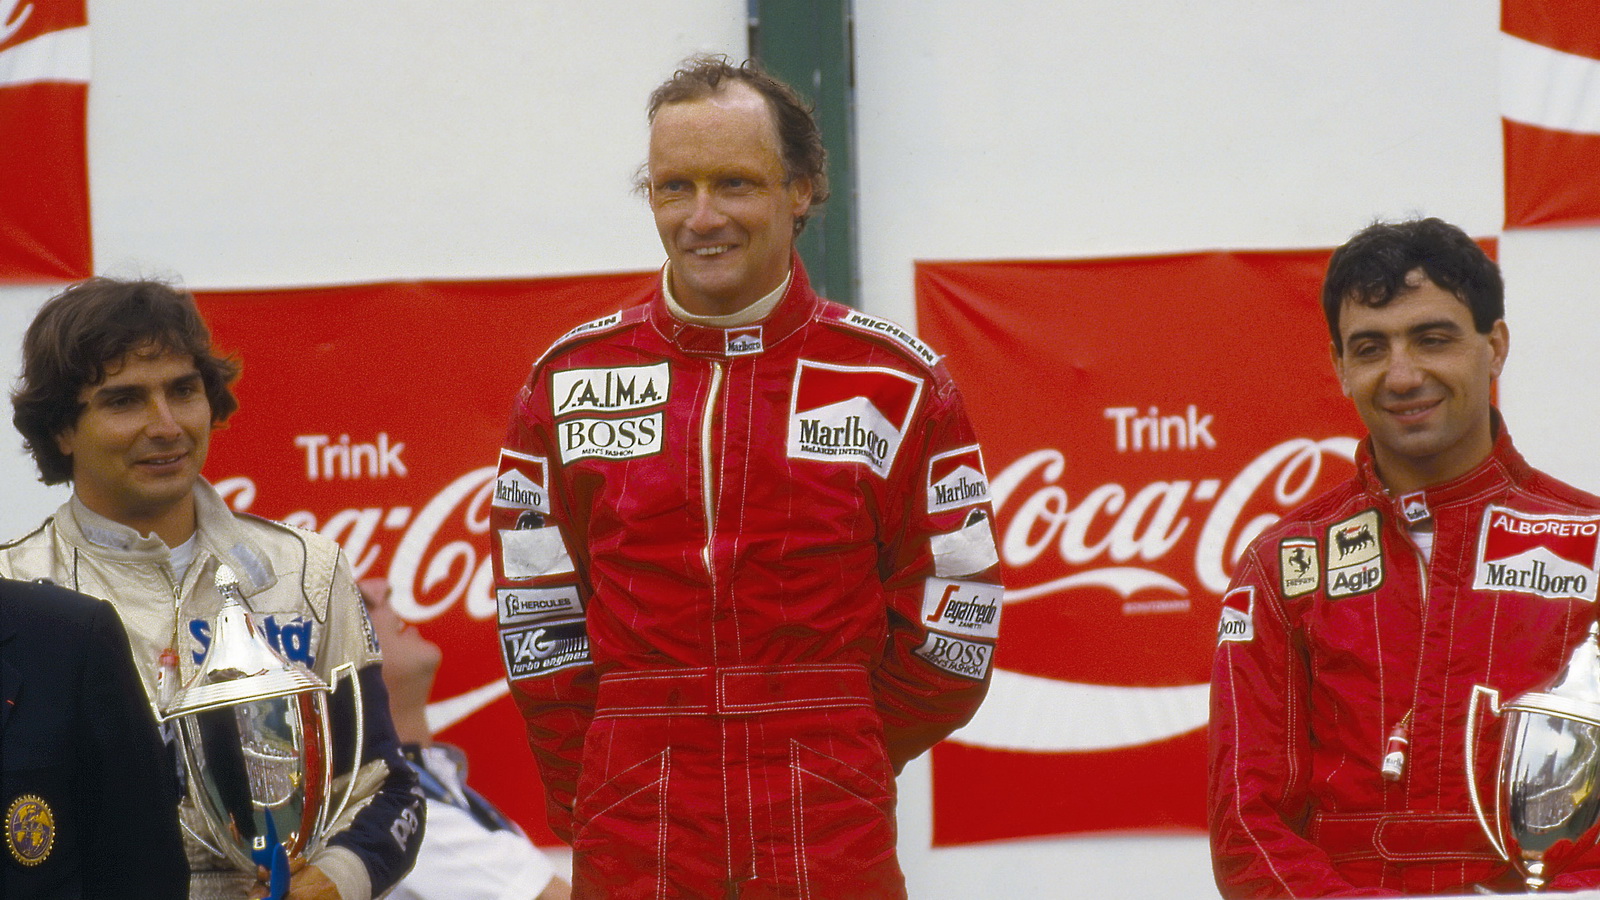 Lauda_Austrian GP 1984_podium